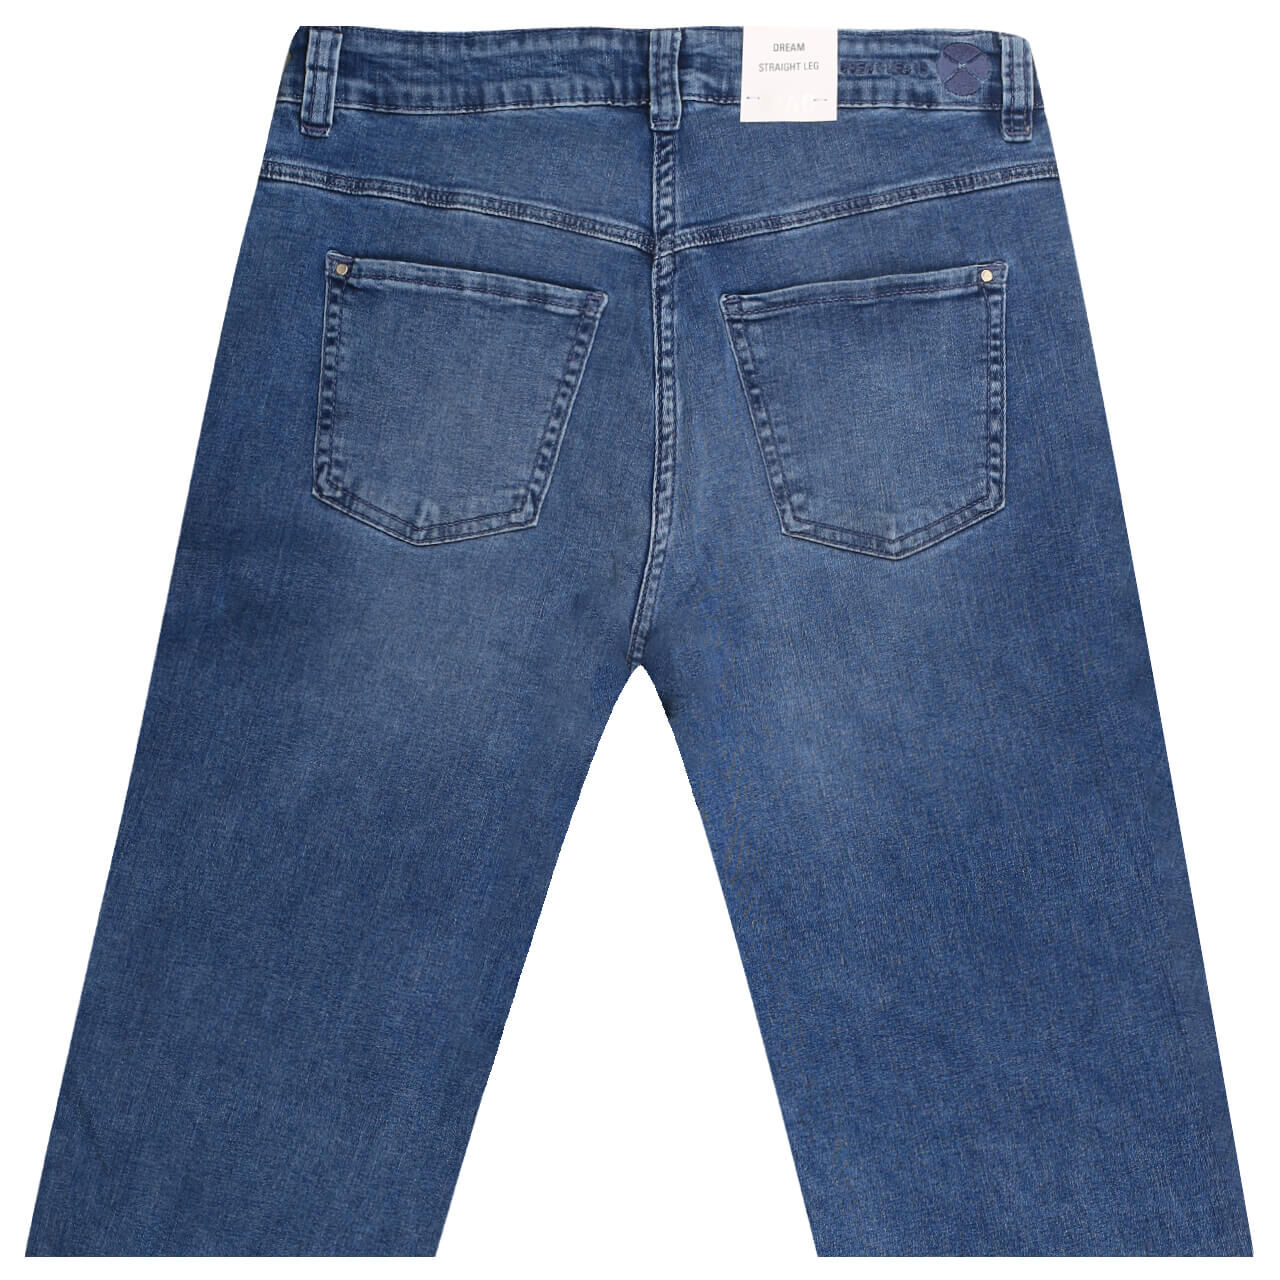 MAC Jeans Dream für Damen in Blau verwaschen, FarbNr.: D540